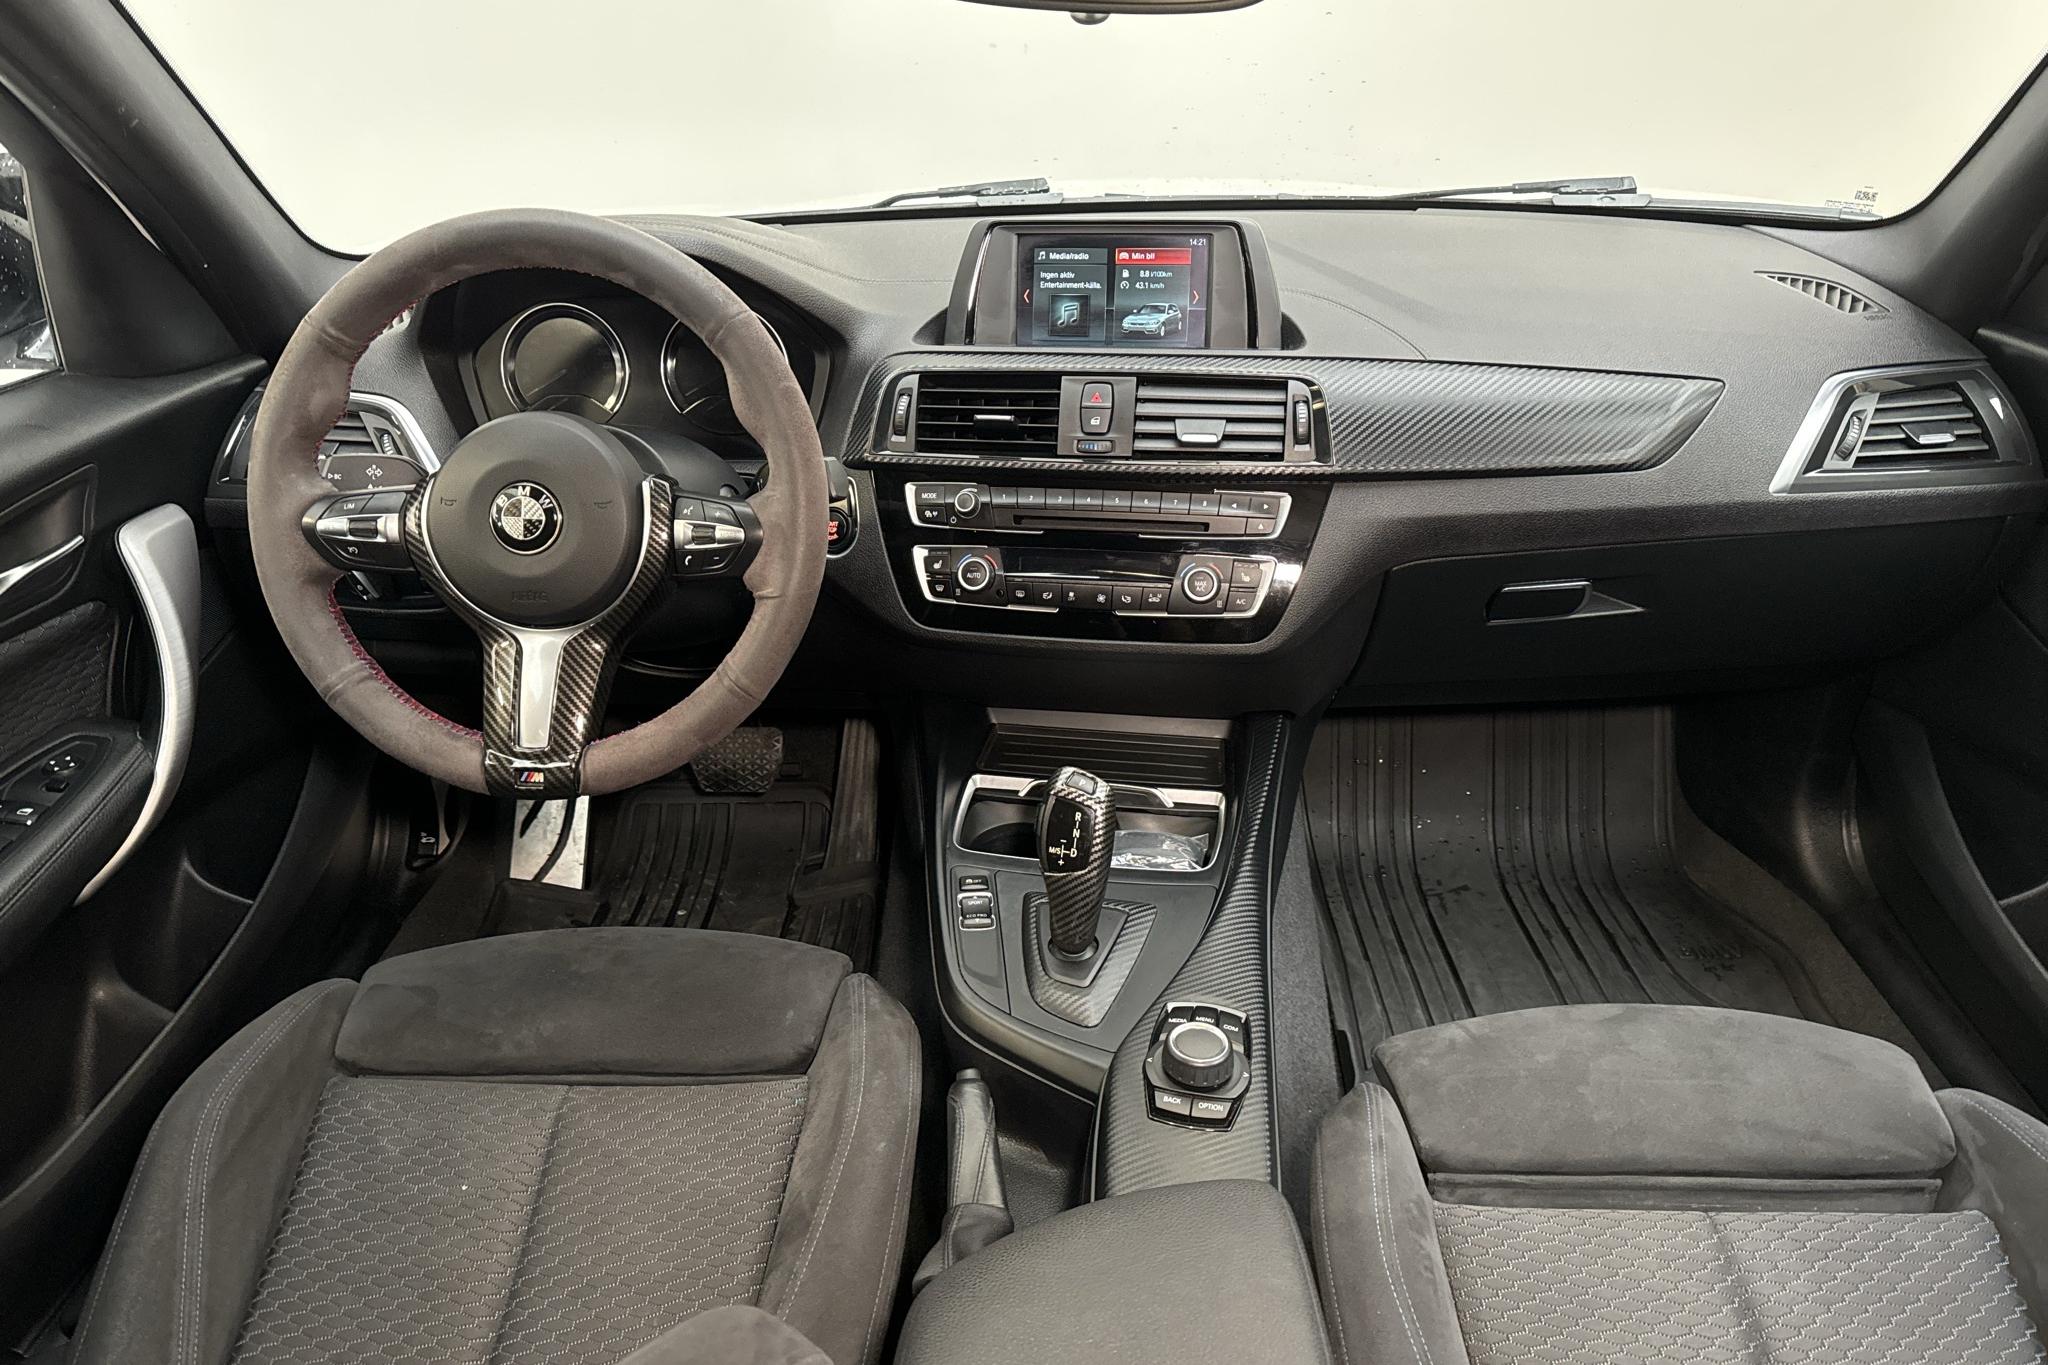 BMW 118i 5dr, F20 (136hk) - 107 660 km - Automatic - white - 2018